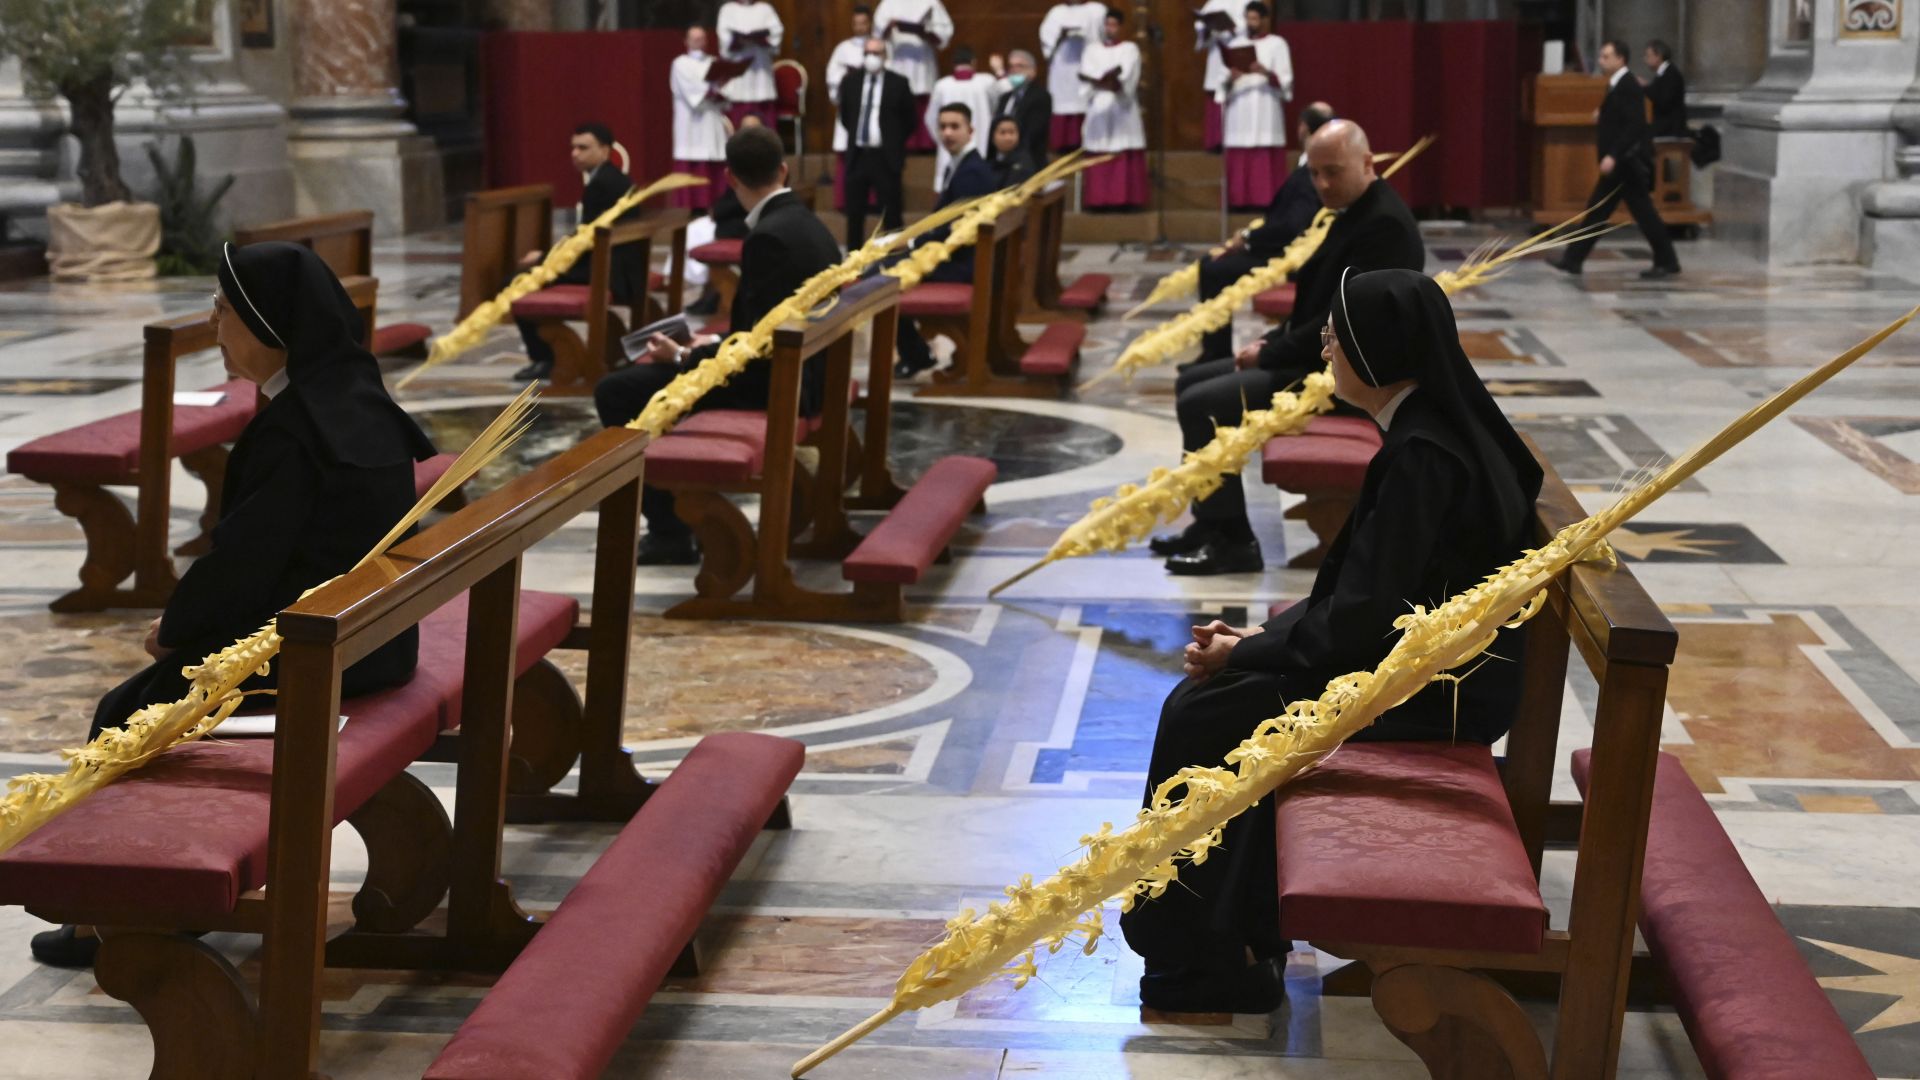 Папа Франциск главата на Римокатолическата църква отслужи днес необичайна литургия